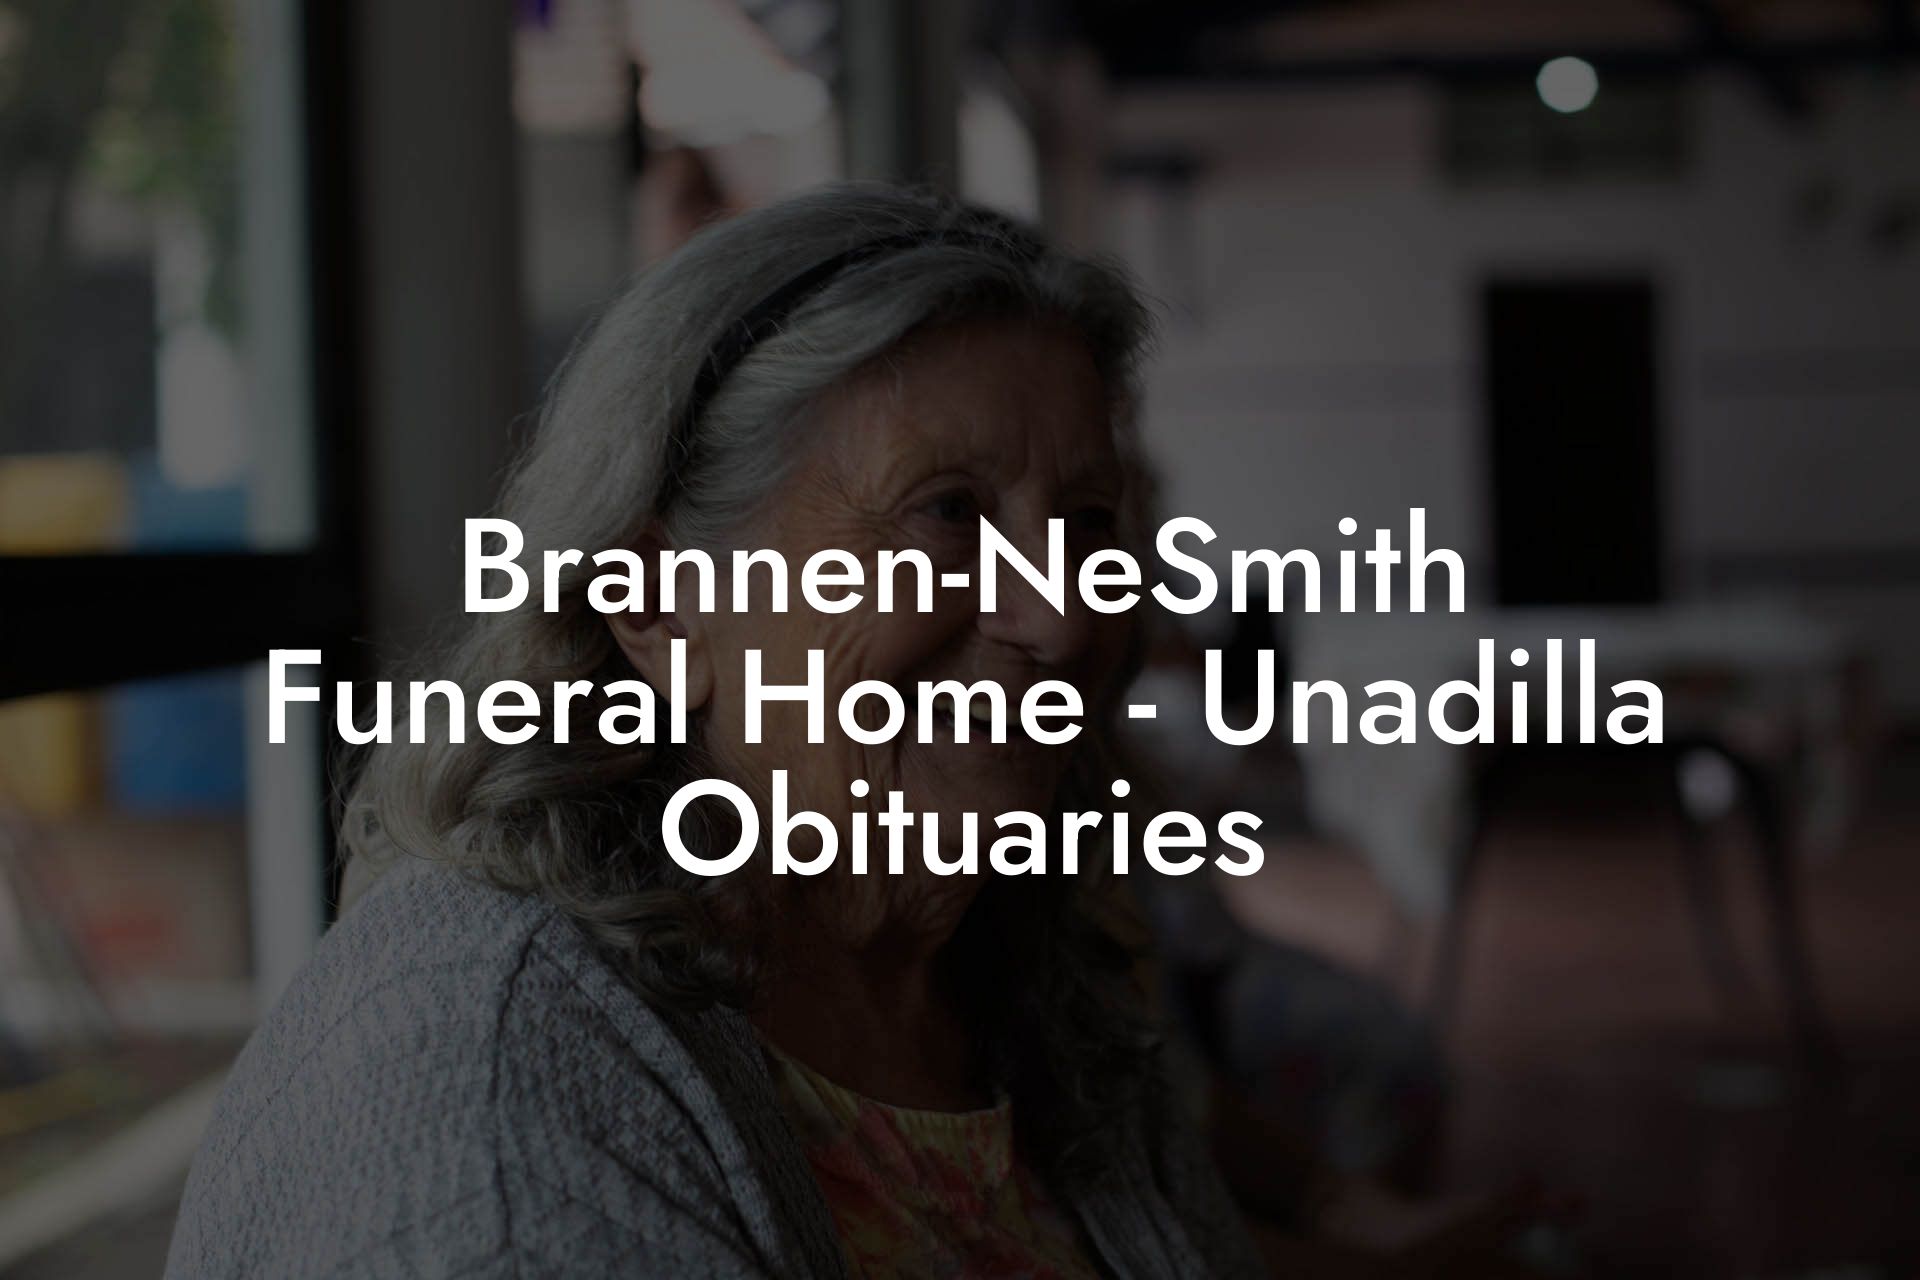 Brannen-NeSmith Funeral Home - Unadilla Obituaries